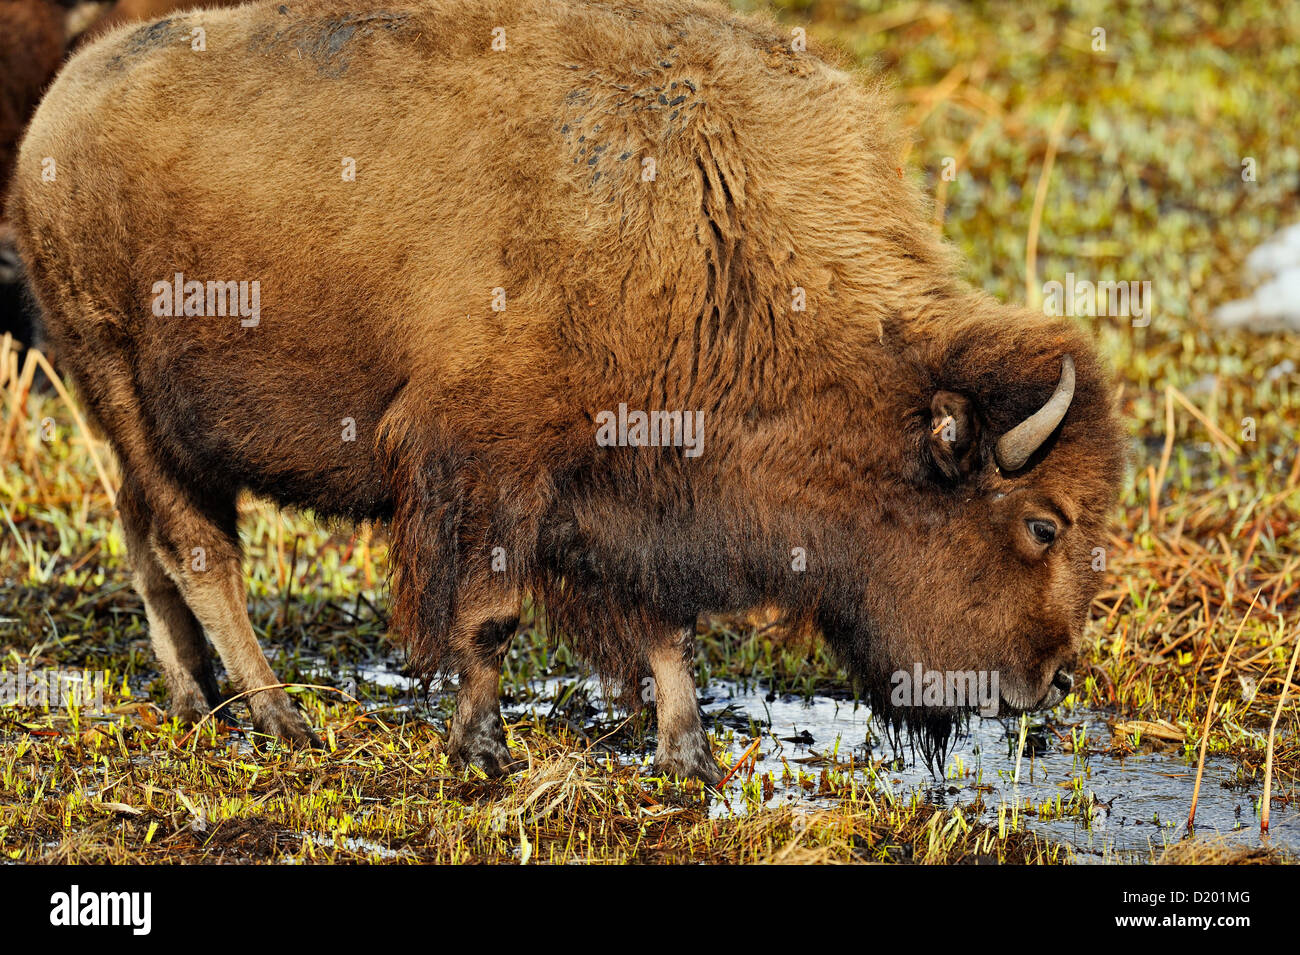 Bison d'Amérique l'alimentation et de boire dans une zone humide chauffée par l'écoulement d'eau de source chaude, le Parc National de Yellowstone, Wyoming, USA Banque D'Images